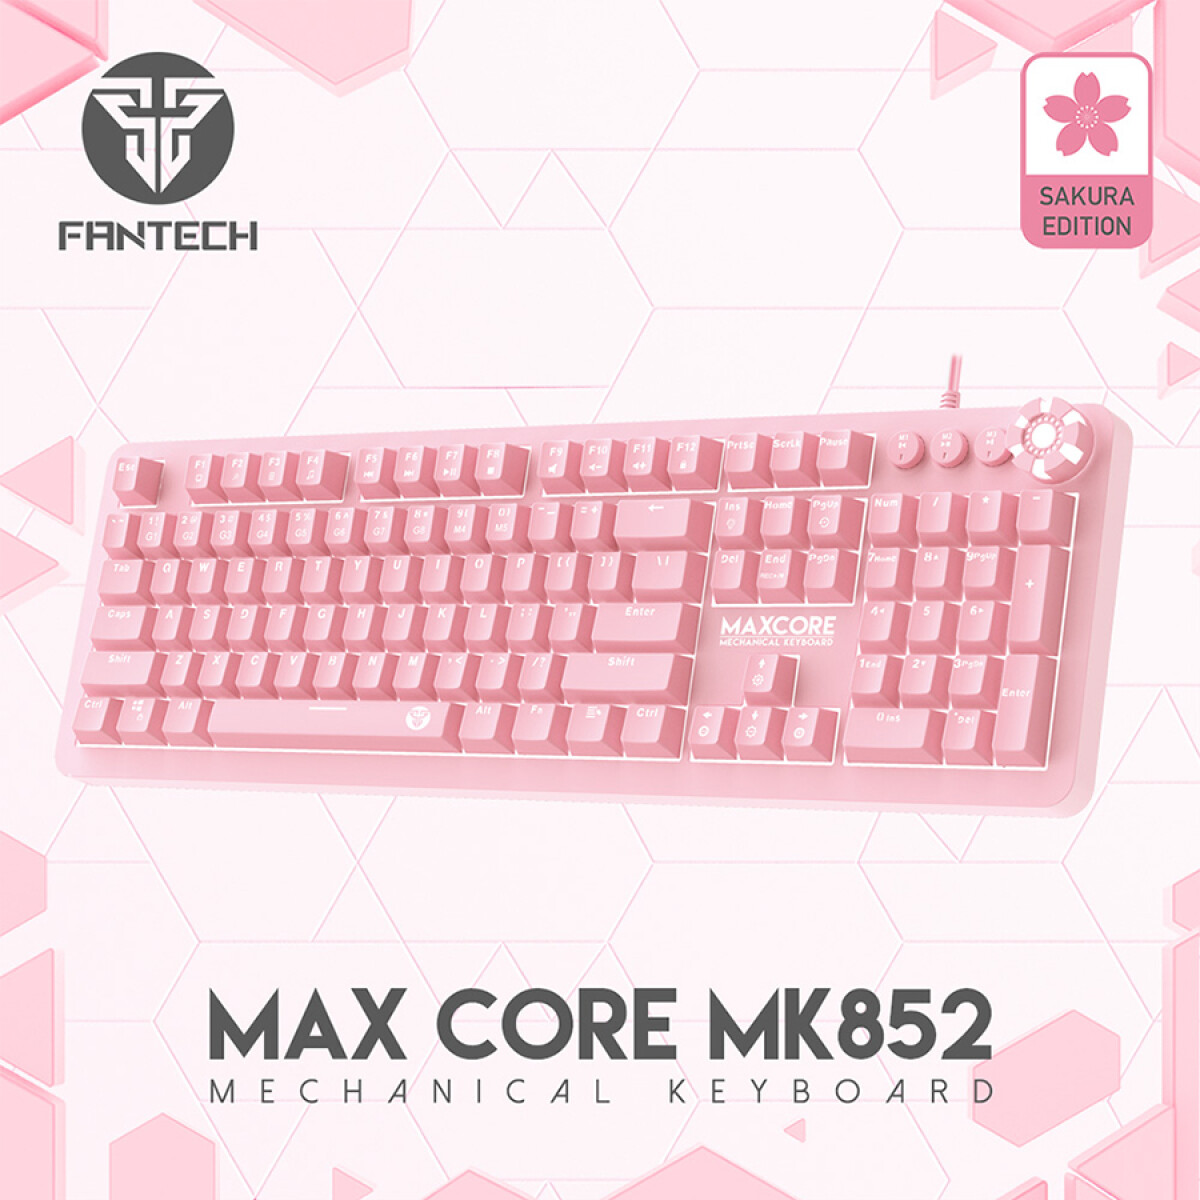 Teclado Mecánico Gamer · MK852 Max Core (Sakura Edition) 